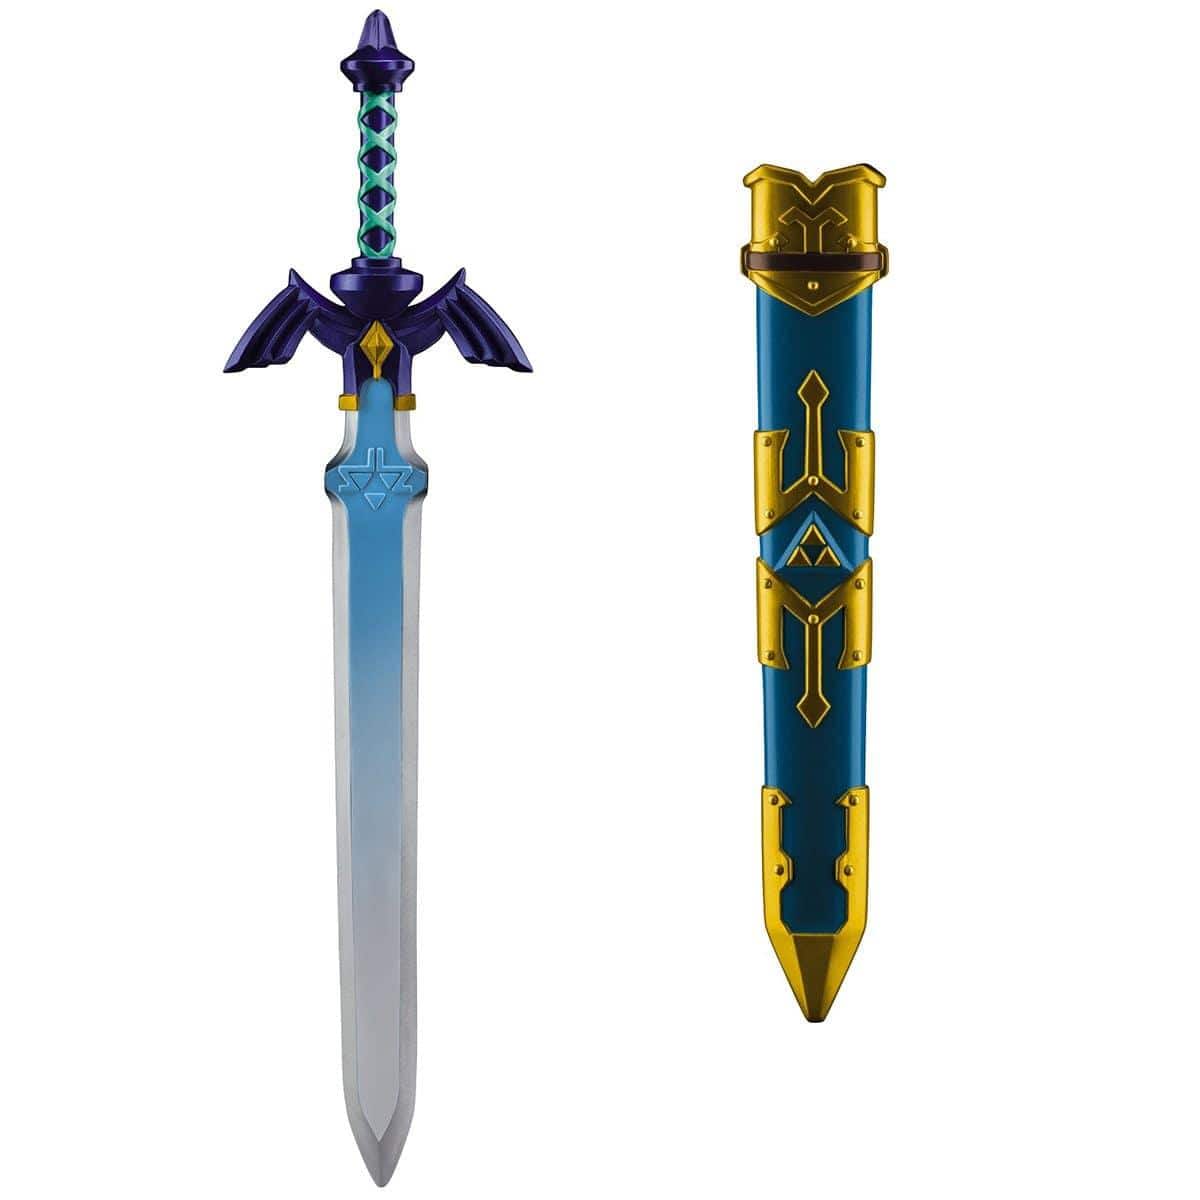 Buy Costume Accessories Link's master sword, Legend of Zelda sold at Party Expert